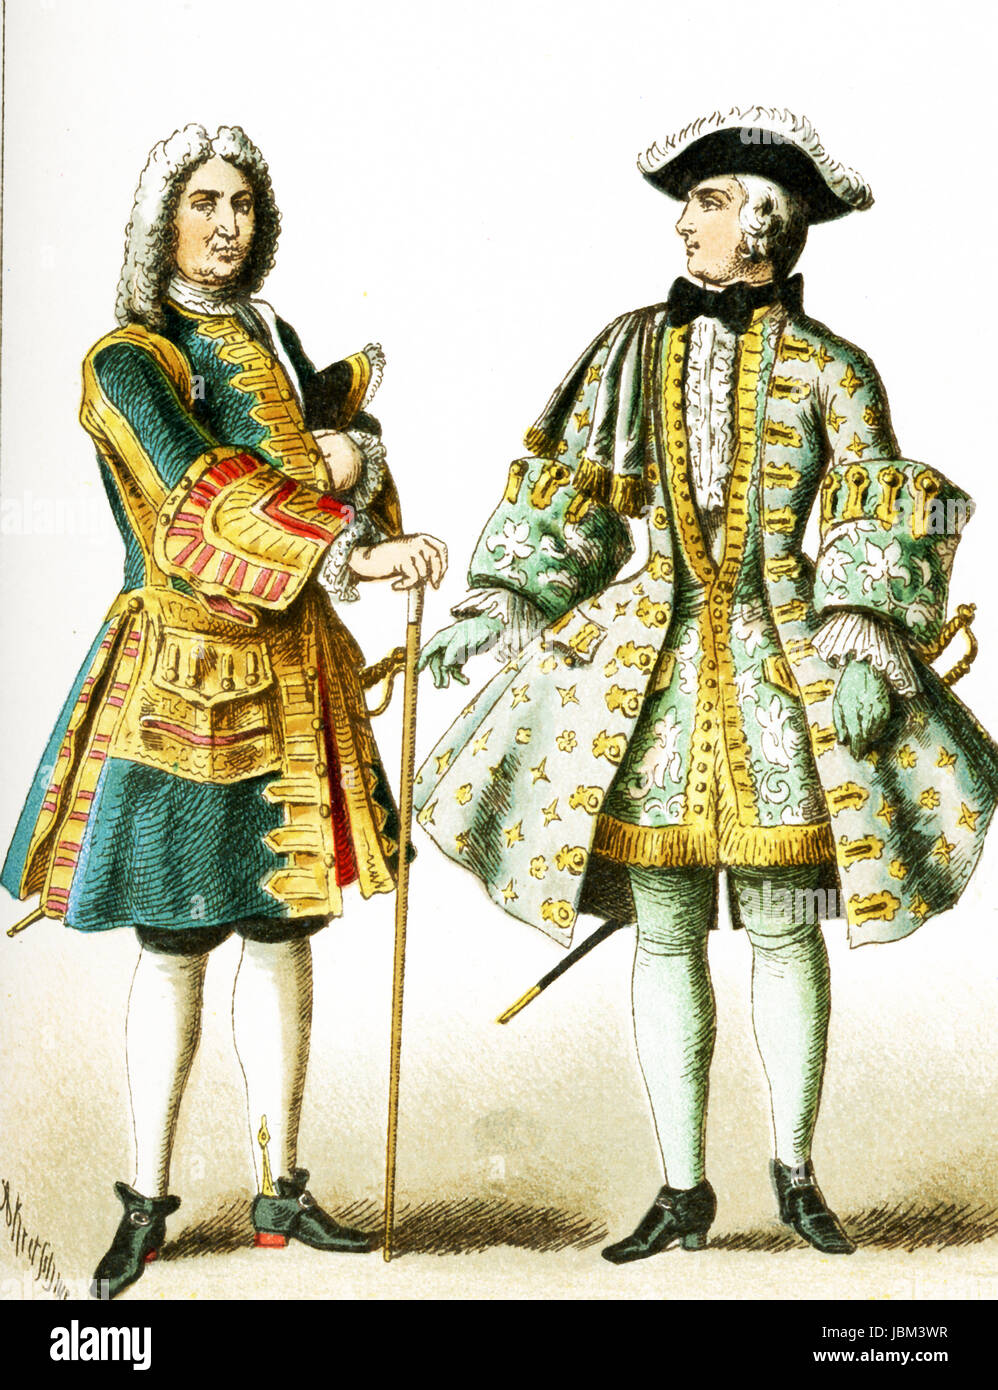 Le figure qui rappresentate sono uomini francesi di rango dal 1700 al 1750 D.C. L'illustrazione risale al 1882. Foto Stock